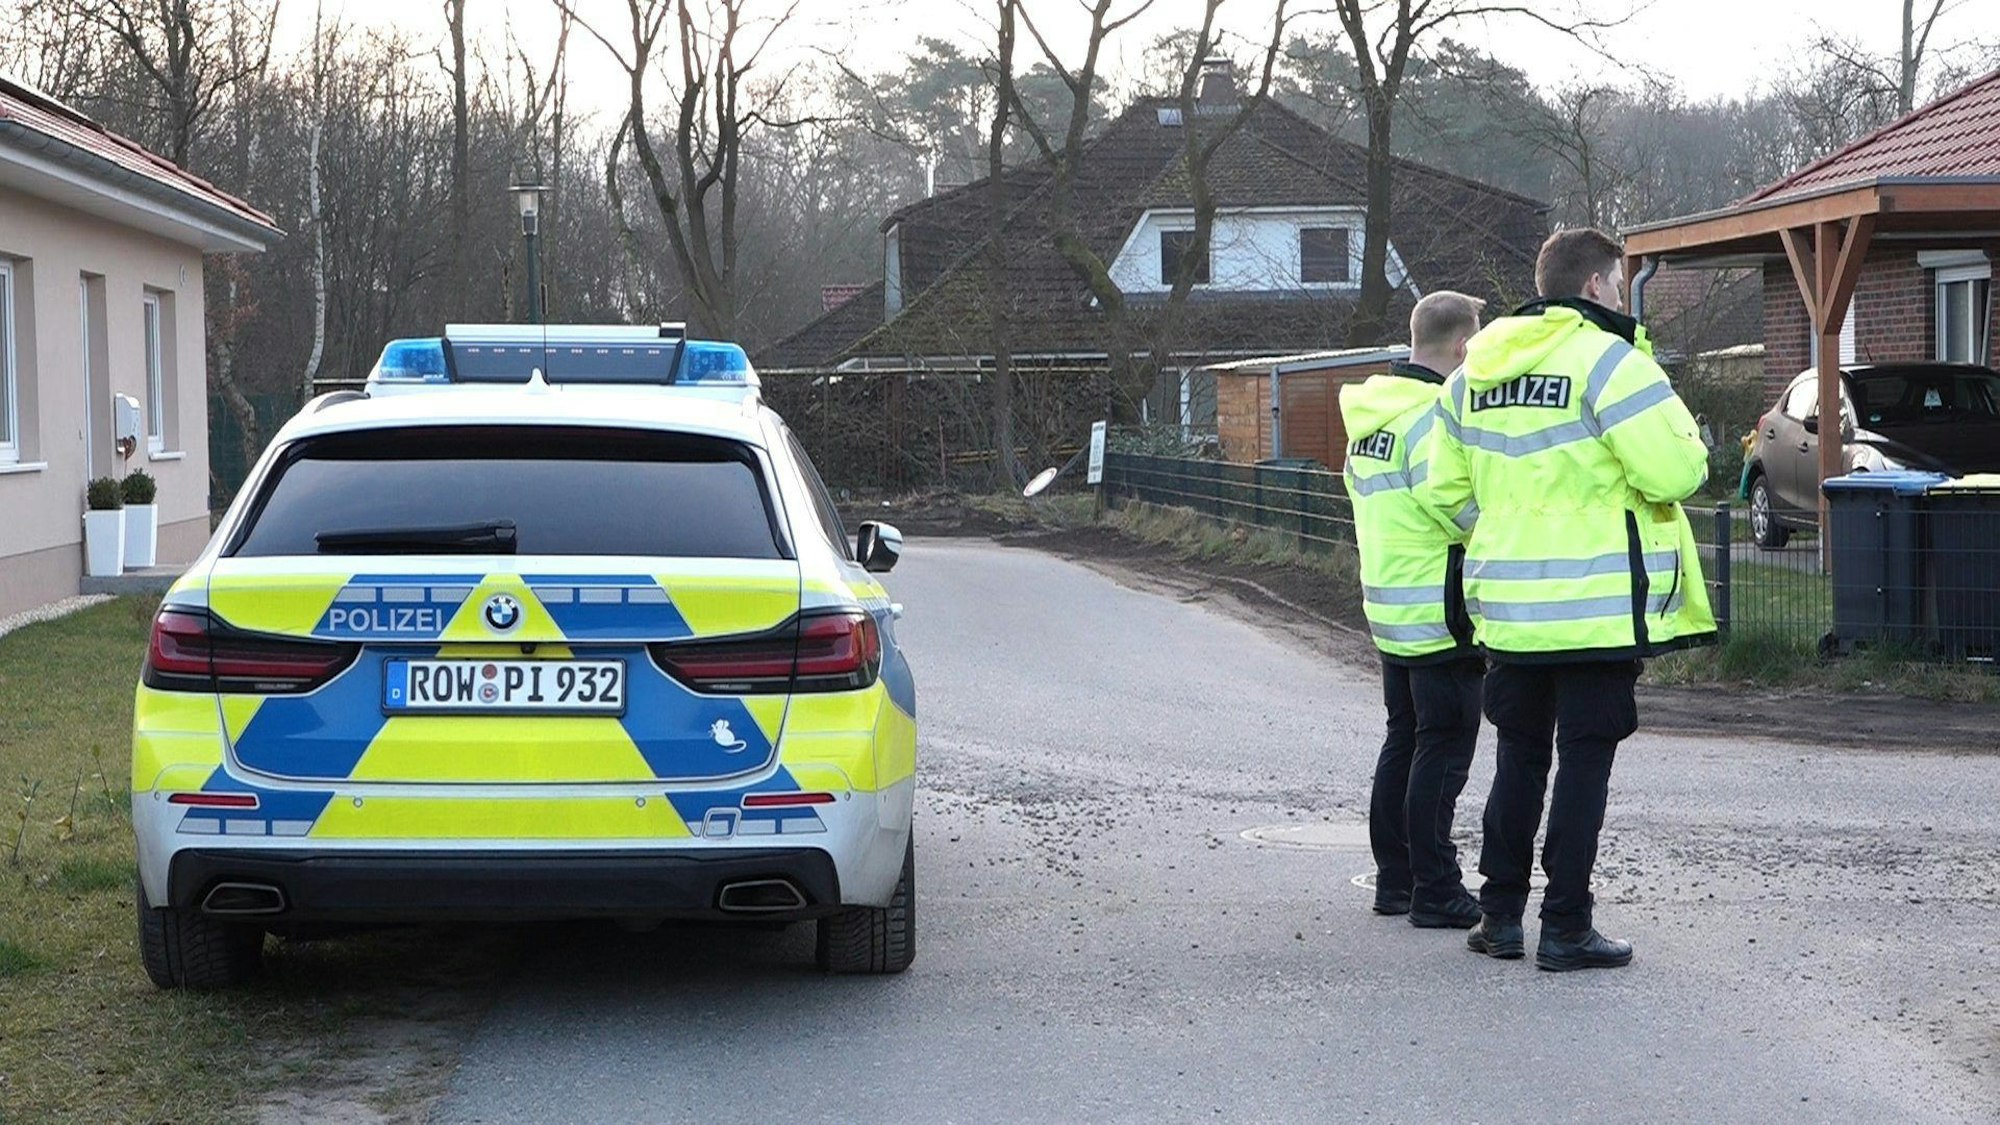 Die Polizei steht in einem Wohngebiet in Bothel, nachdem Schüsse gefallen sind. Die Polizei ermittelt nach Schüssen im Landkreis Rotenburg wegen möglicher Kapitaldelikte.